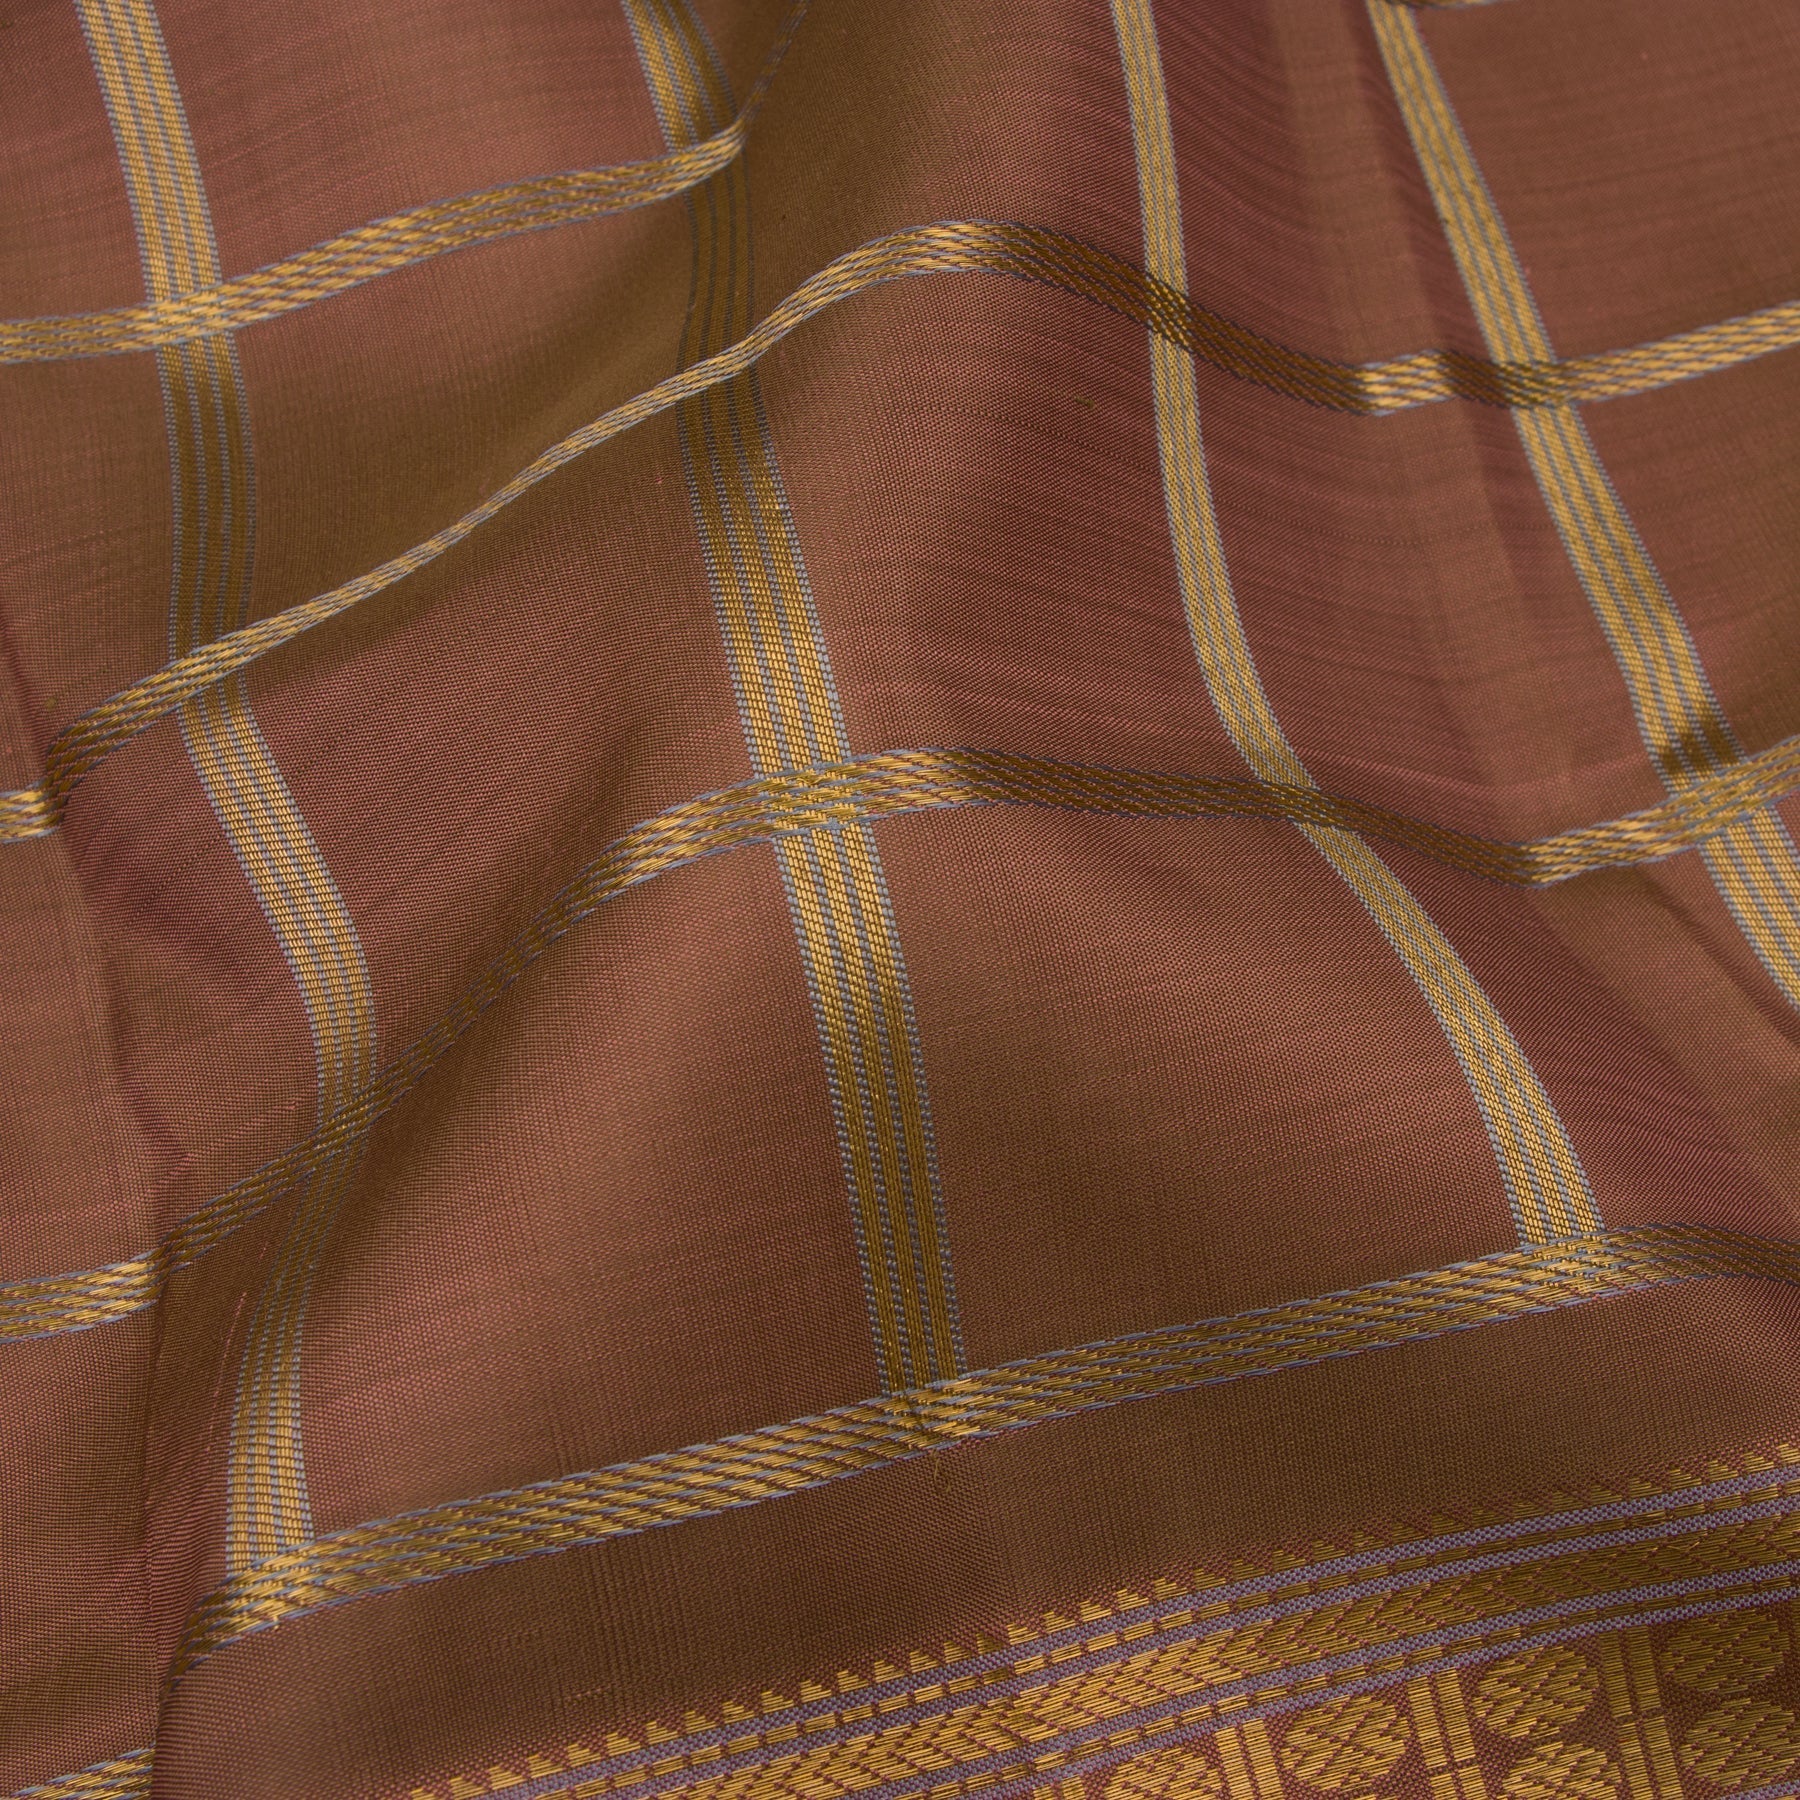 Kanakavalli Kanjivaram Silk Sari 22-041-HS001-14993 - Fabric View